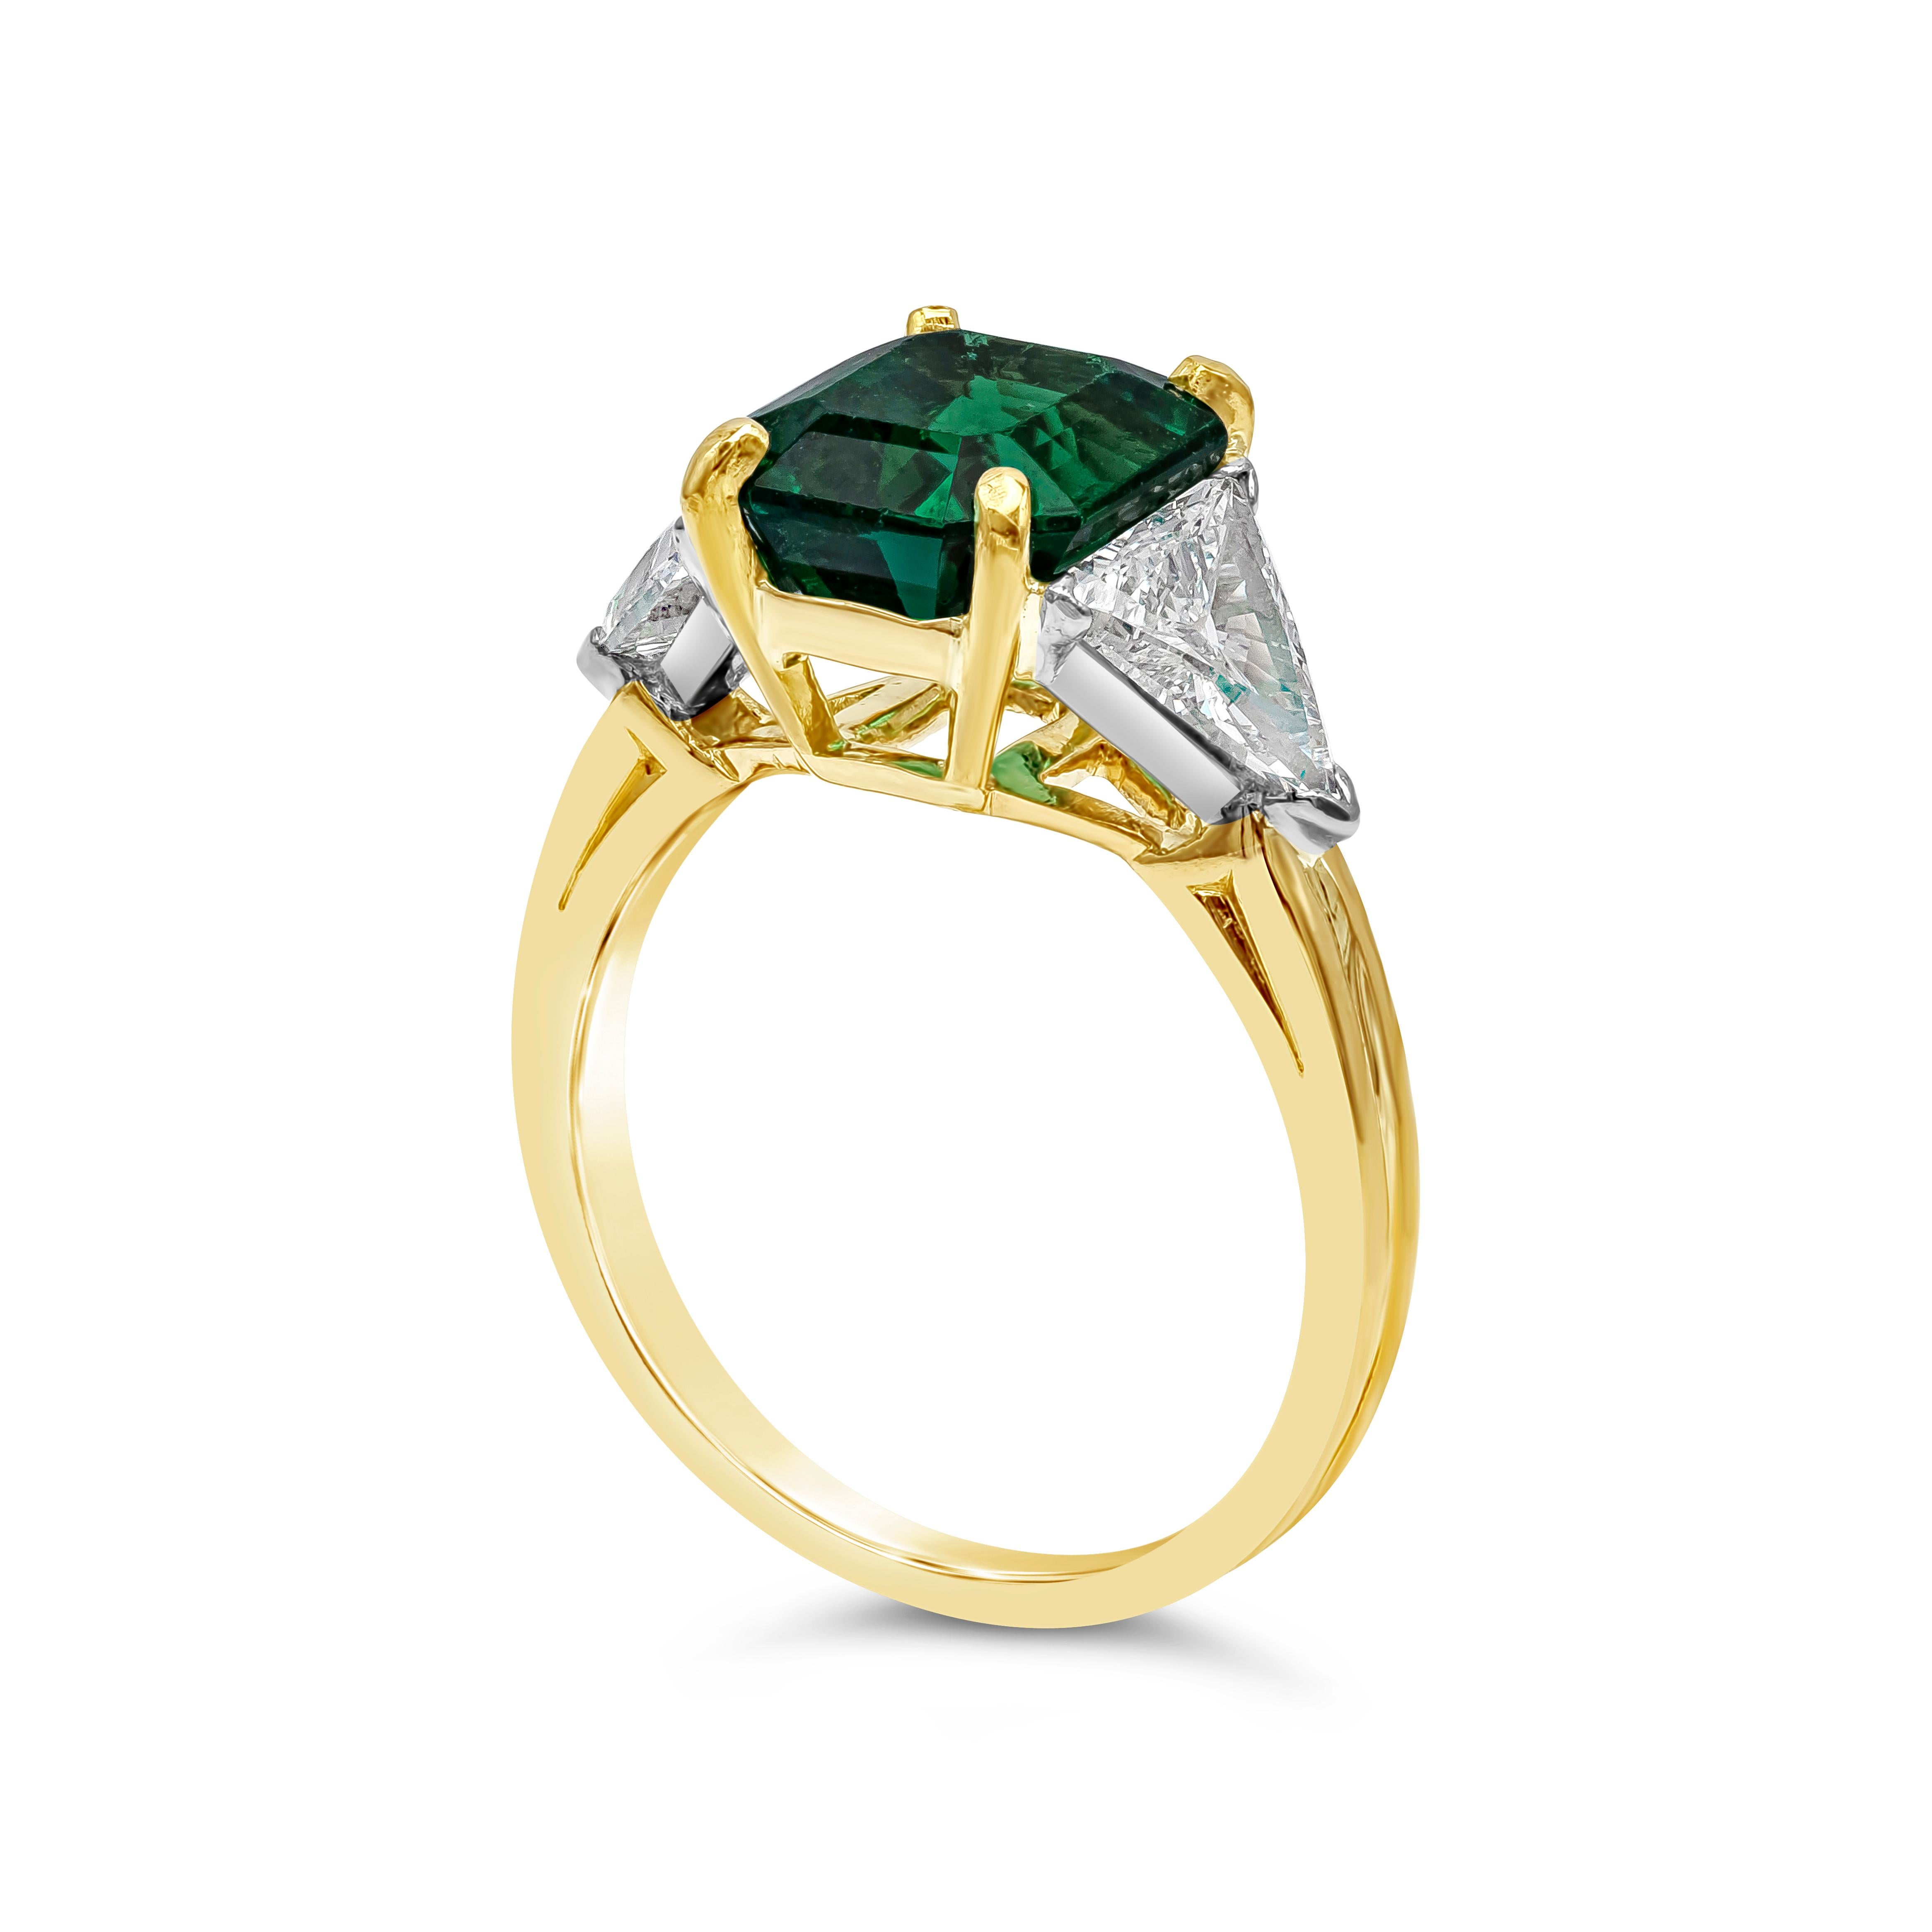 Contemporary Oscar Heyman 2.91 Carat Emerald Cut Green Emerald Three Stone Ring For Sale